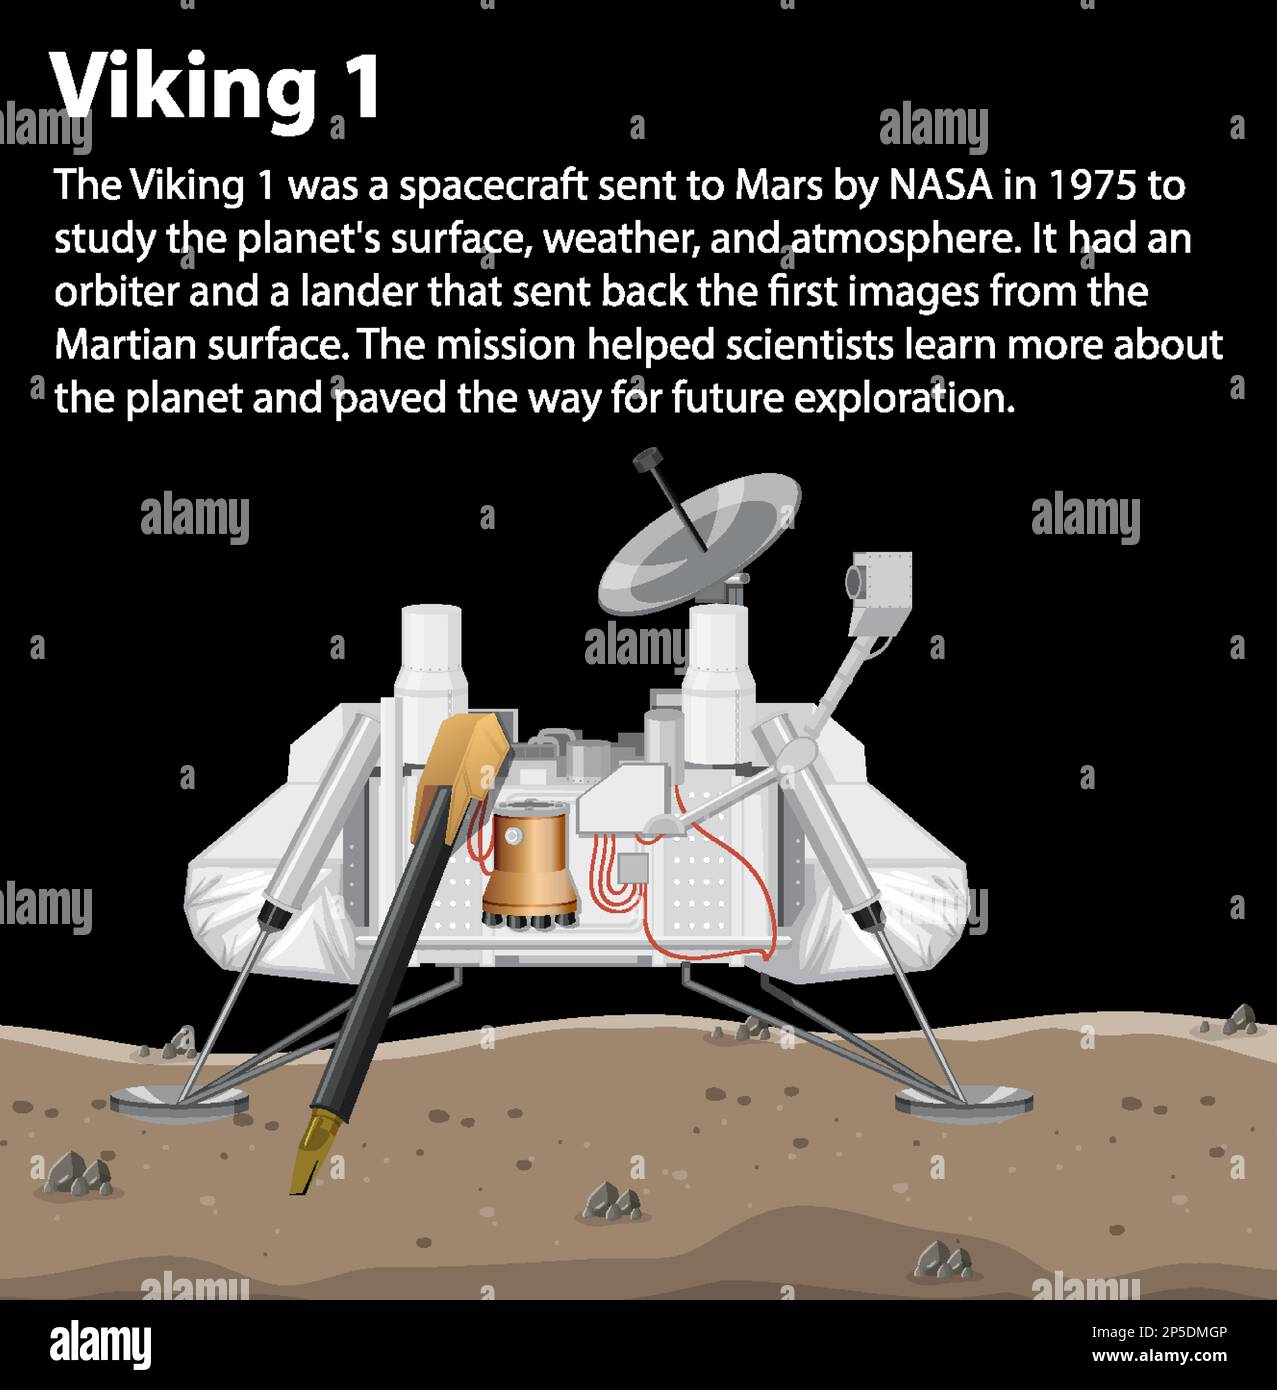 Viking 1 Spacecraft Lander on Mars illustration Stock Vector